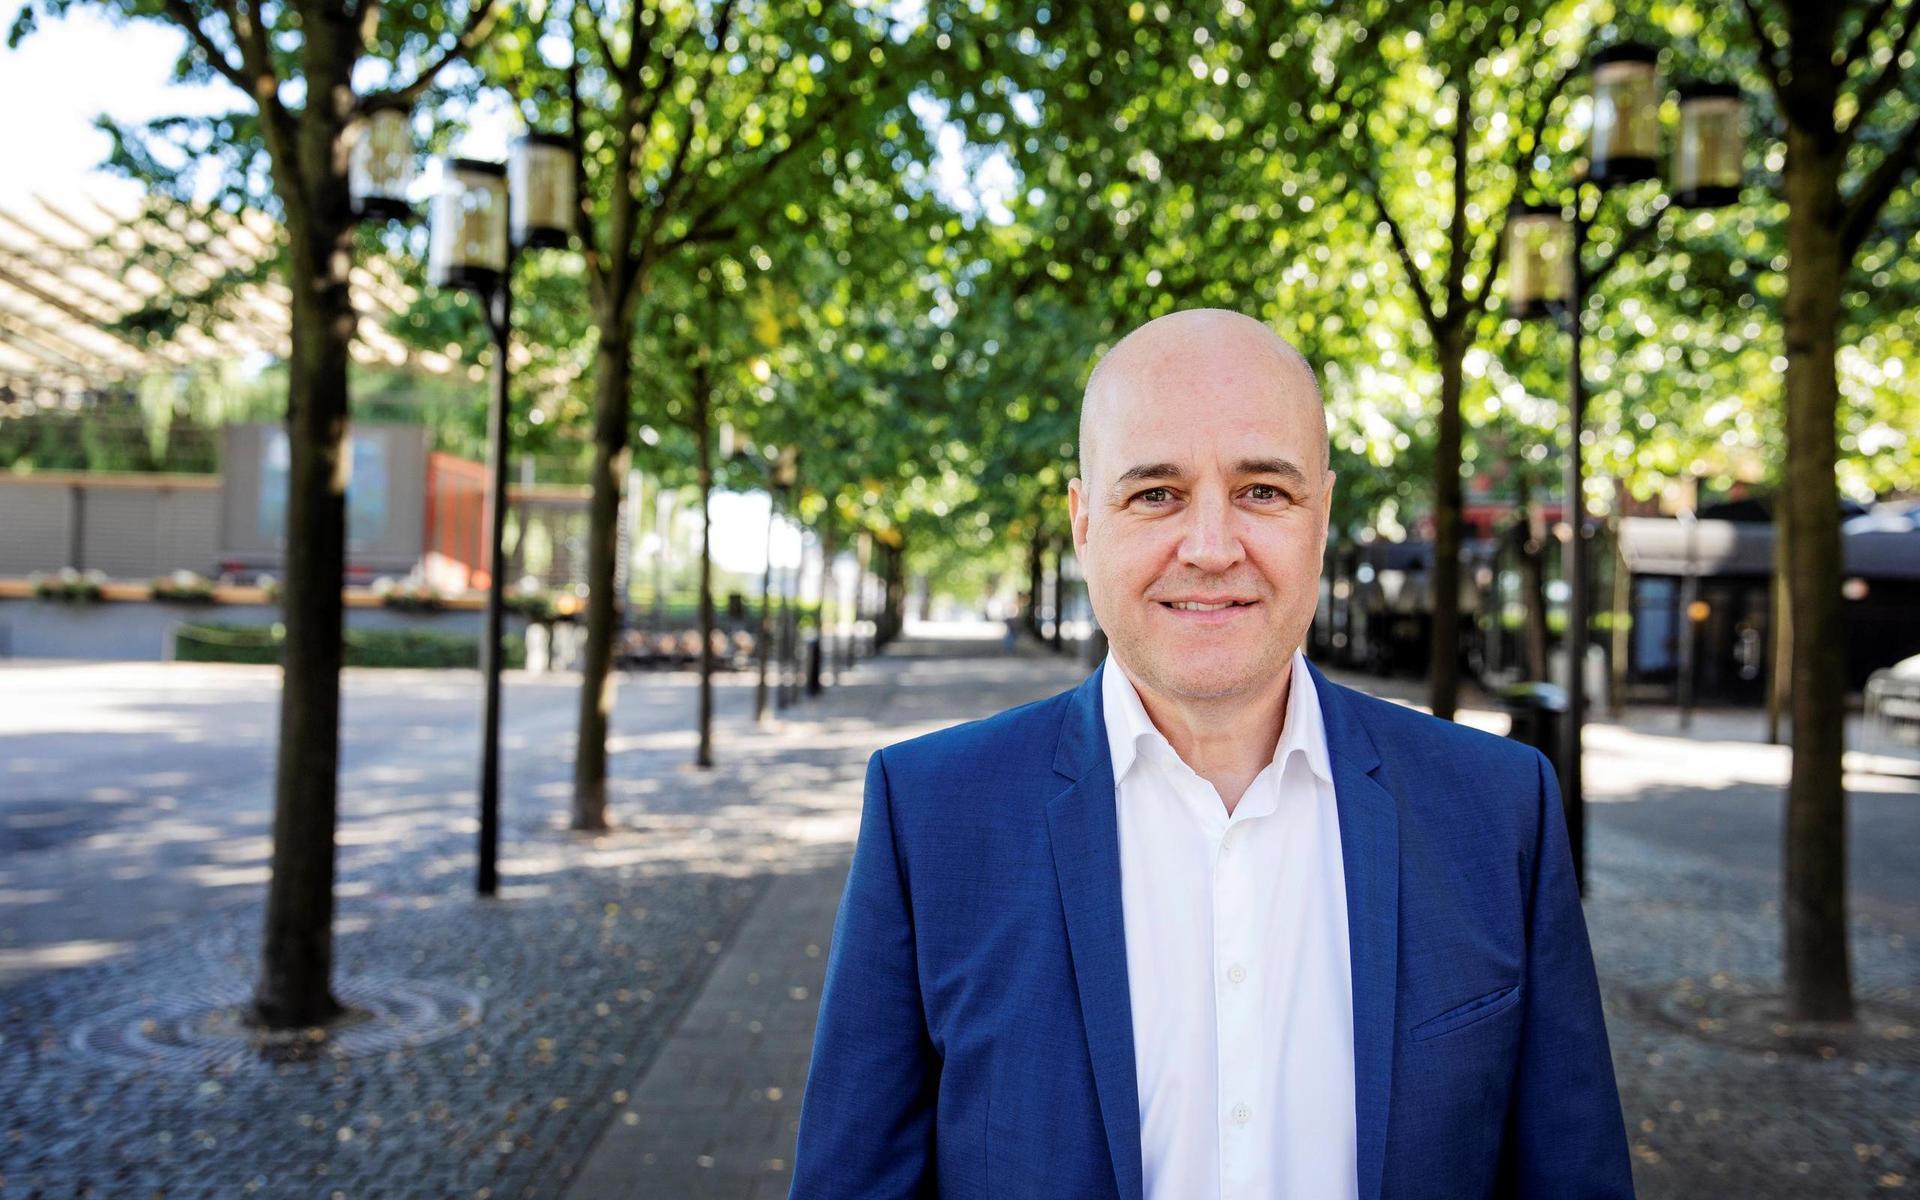 Fredrik Reinfeldt har nyligen släppt en bok om USA, men kommer mest att prata om ledarskap i förändring, världsläget och kanske sin egen sjukdom i covid-19.